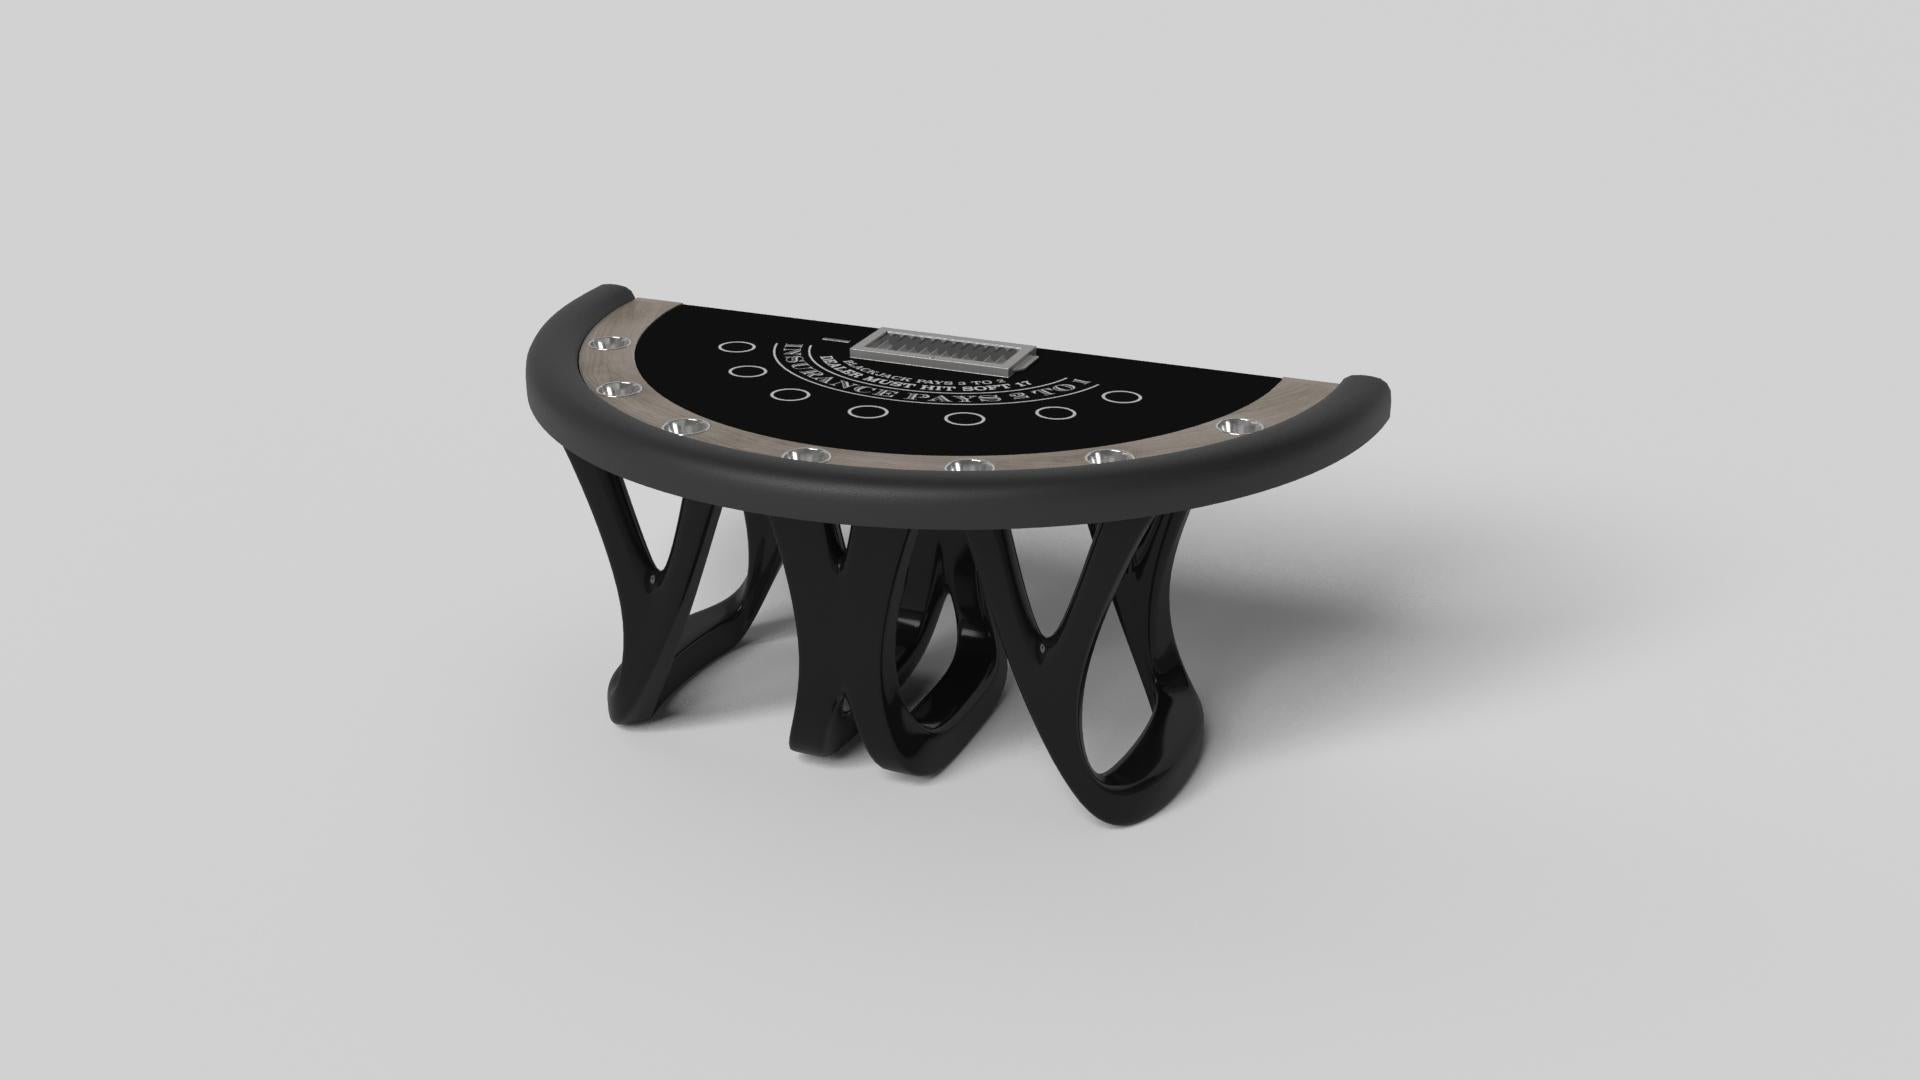 Inspirée par l'œuvre d'Antoni Gaudi et le mouvement du modernisme catalan, la table de blackjack Draco en noyer affiche un style audacieux avec des pieds lisses et incurvés et un plateau de table de qualité casino avec un support de jetons et des